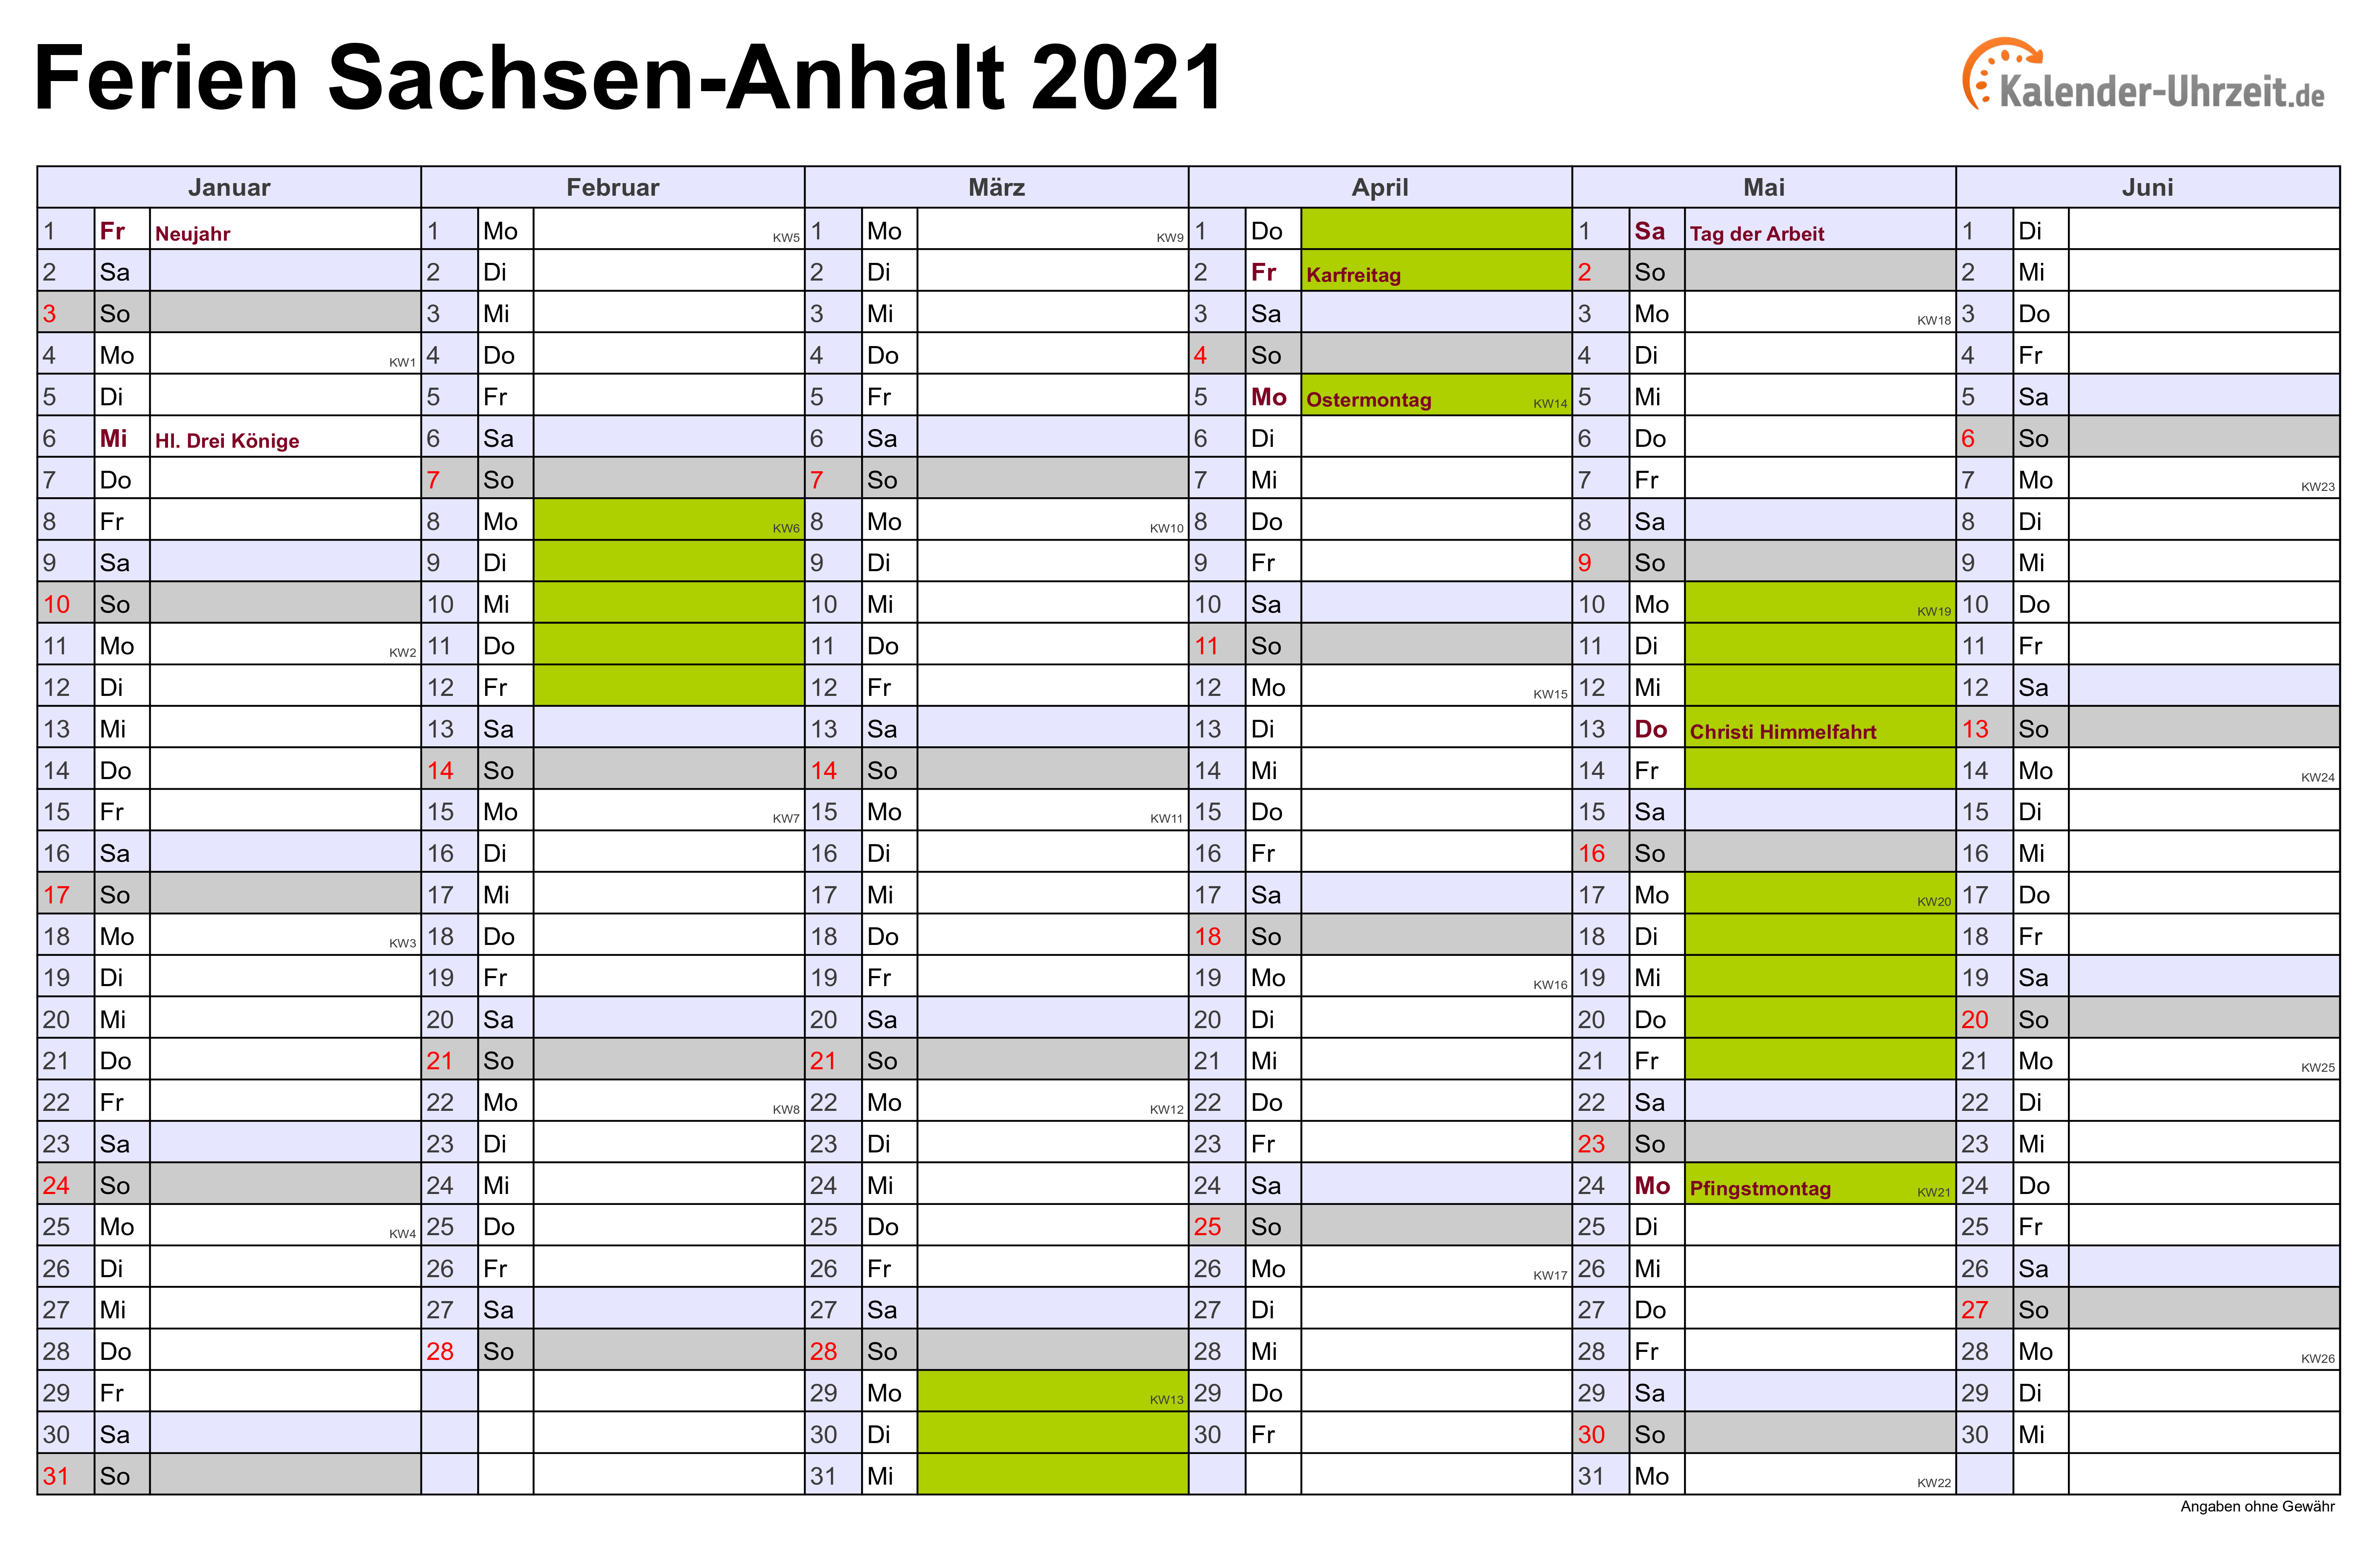 Ferien Sachsen-Anhalt 2021 - Ferienkalender zum Ausdrucken